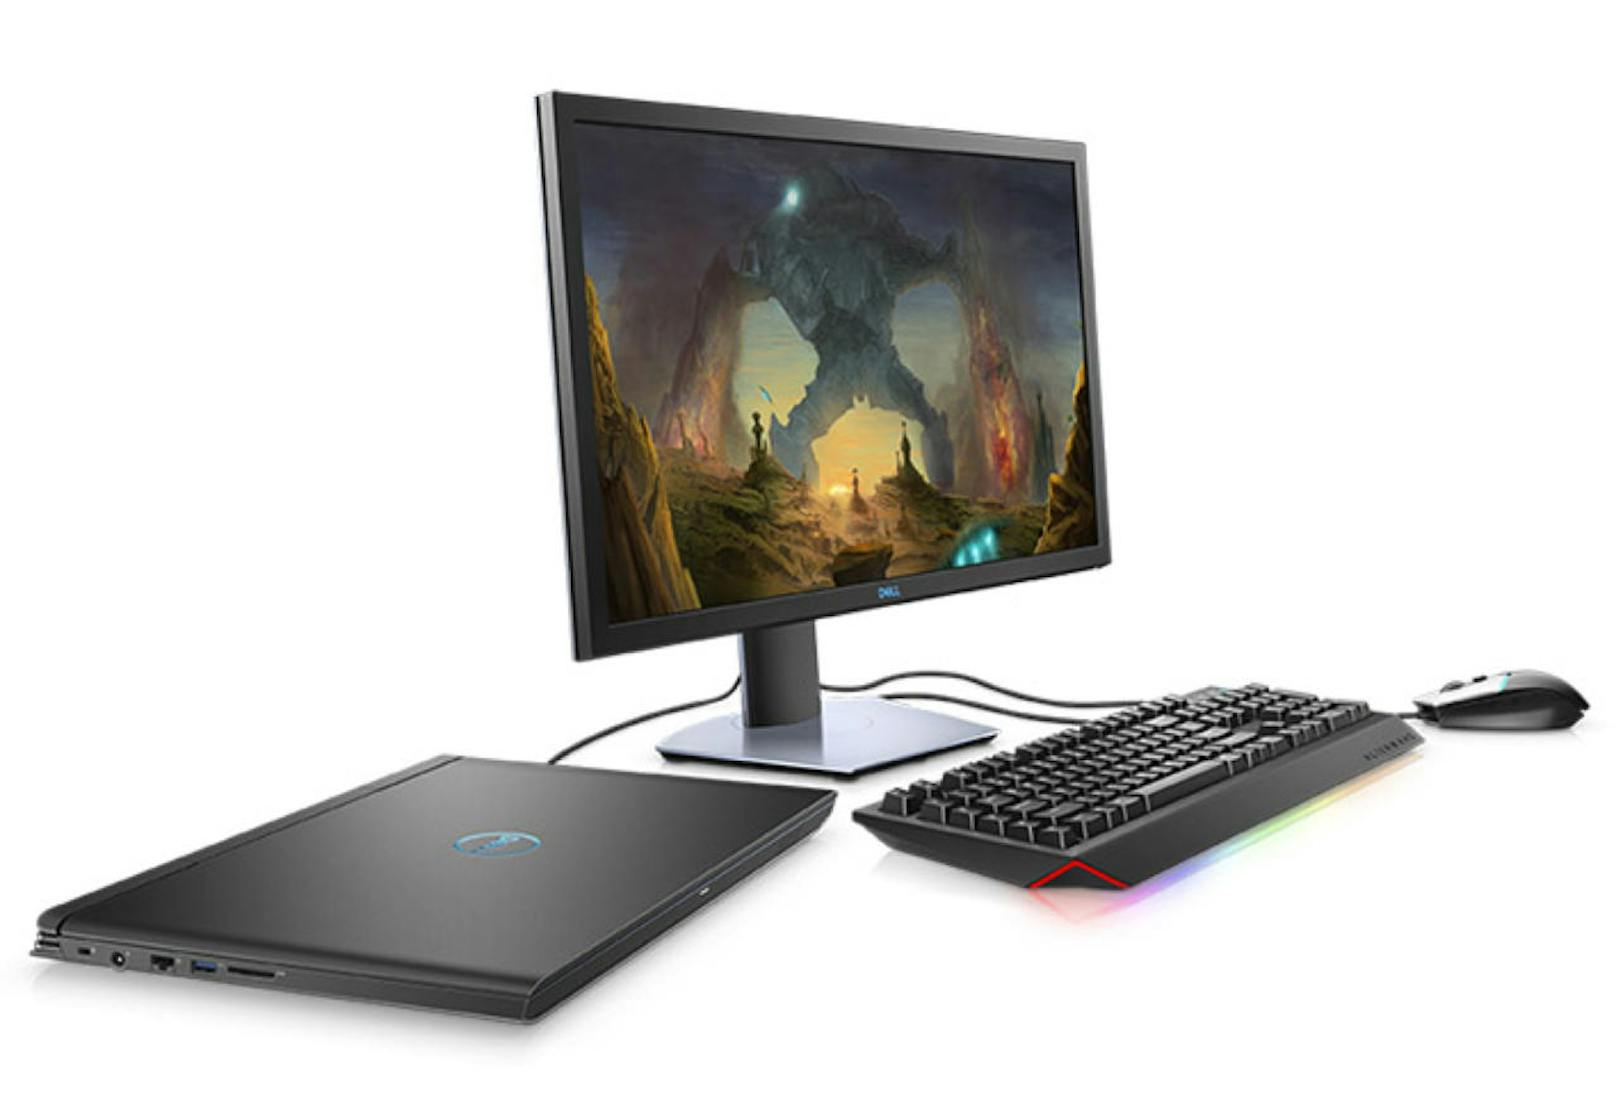 Zudem präsentiert Dell auf der Gamescom zwei komplett neue Gaming-Monitore mit 24 und 27 Zoll. Das 24-Zoll-Modell bringt FHD-Auflösung und eine übertaktete Bildwiederholrate von 144 Hz mit, ...